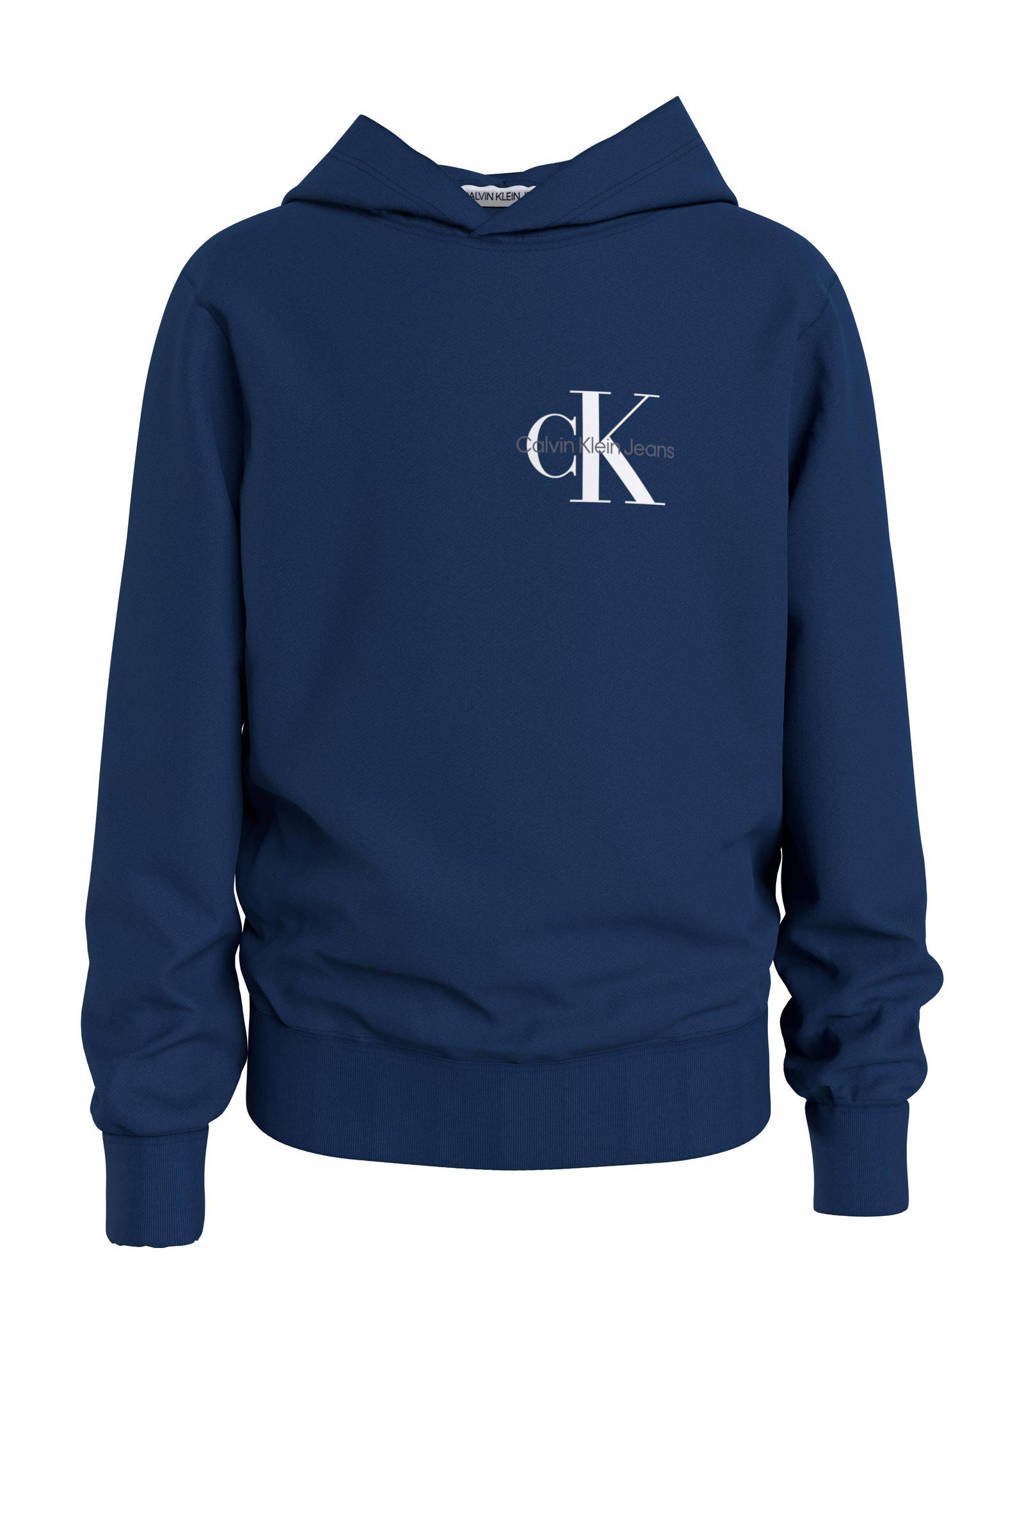 Blauwe jongens en meisjes CALVIN KLEIN JEANS hoodie van sweat materiaal met logo dessin, lange mouwen, capuchon en elastische inzet